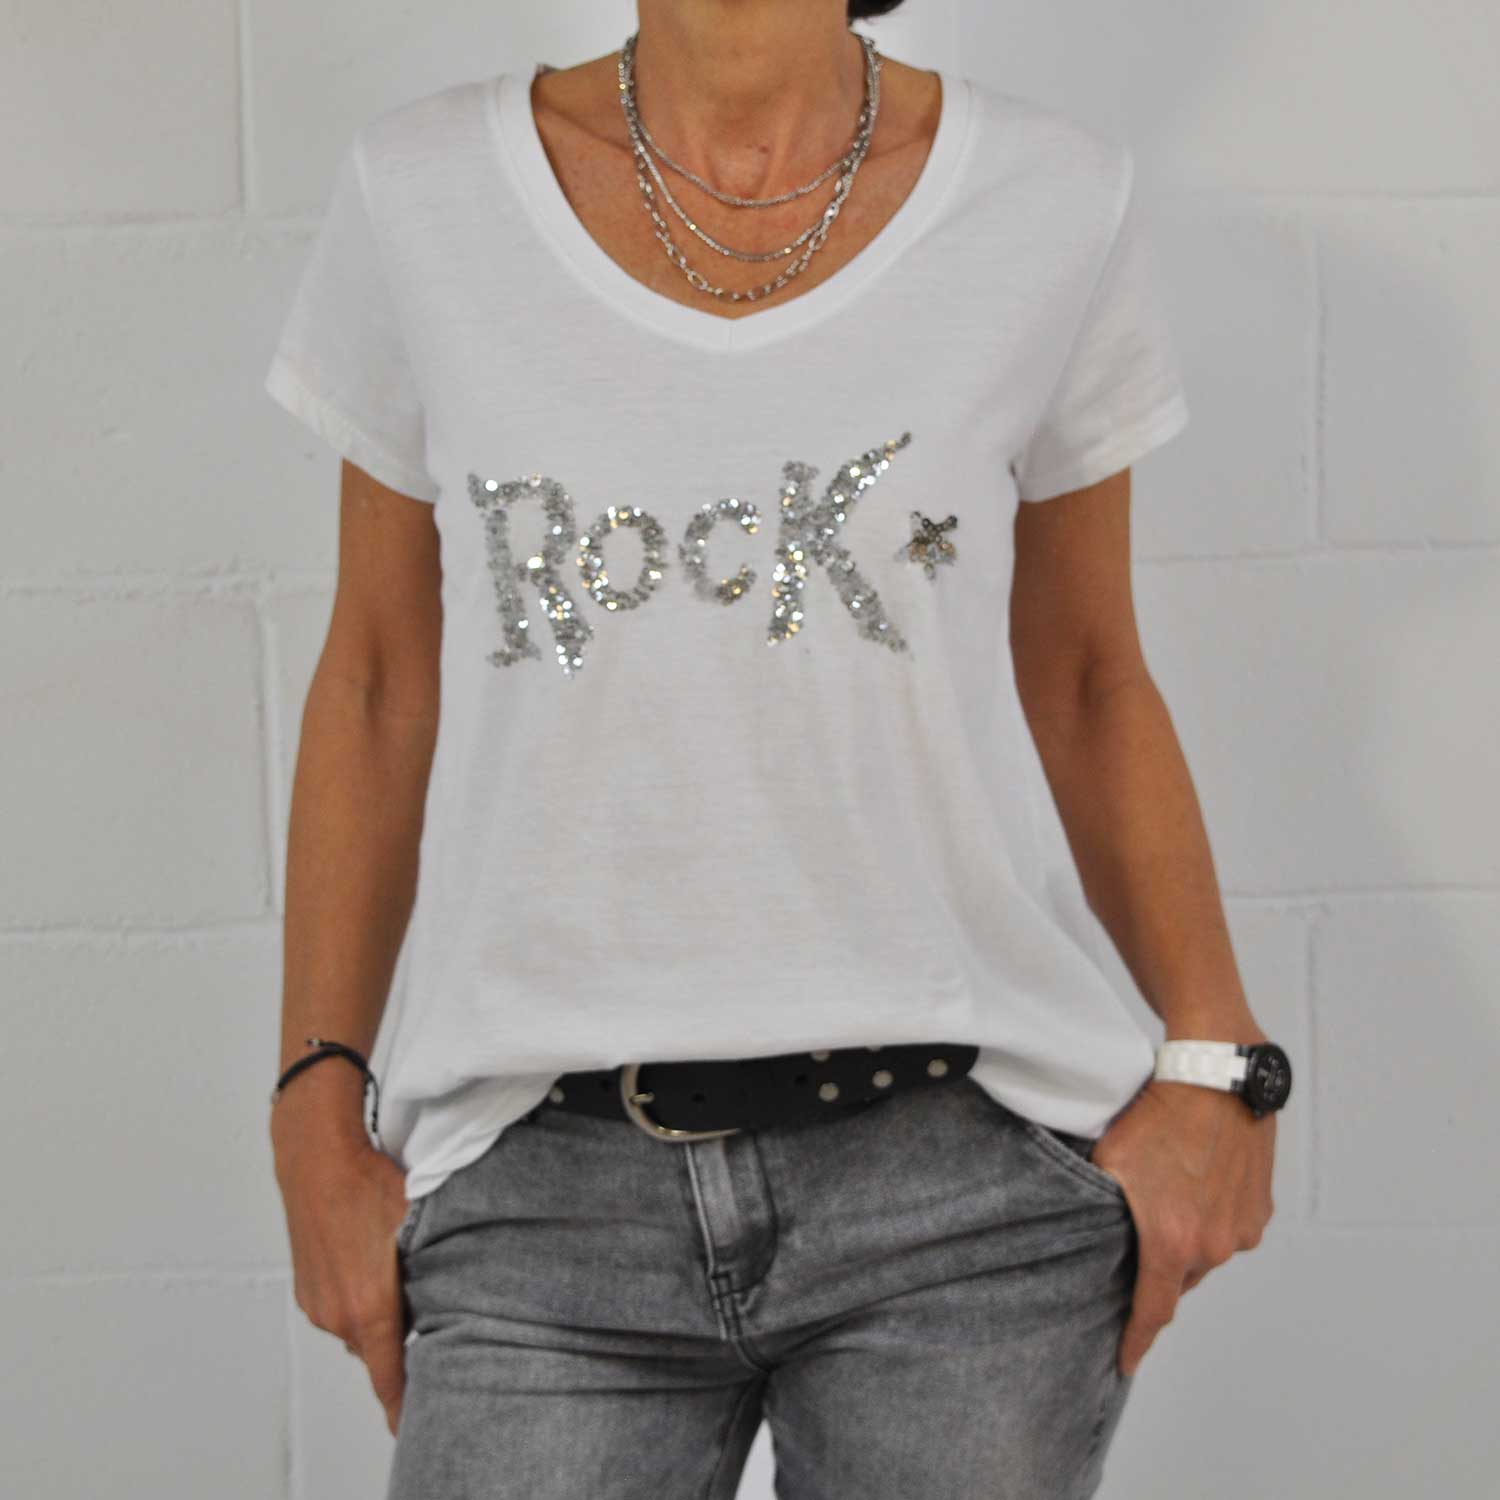 Leer Ritual Derrotado Camiseta rock lentejuelas blanca – The Amisy Company